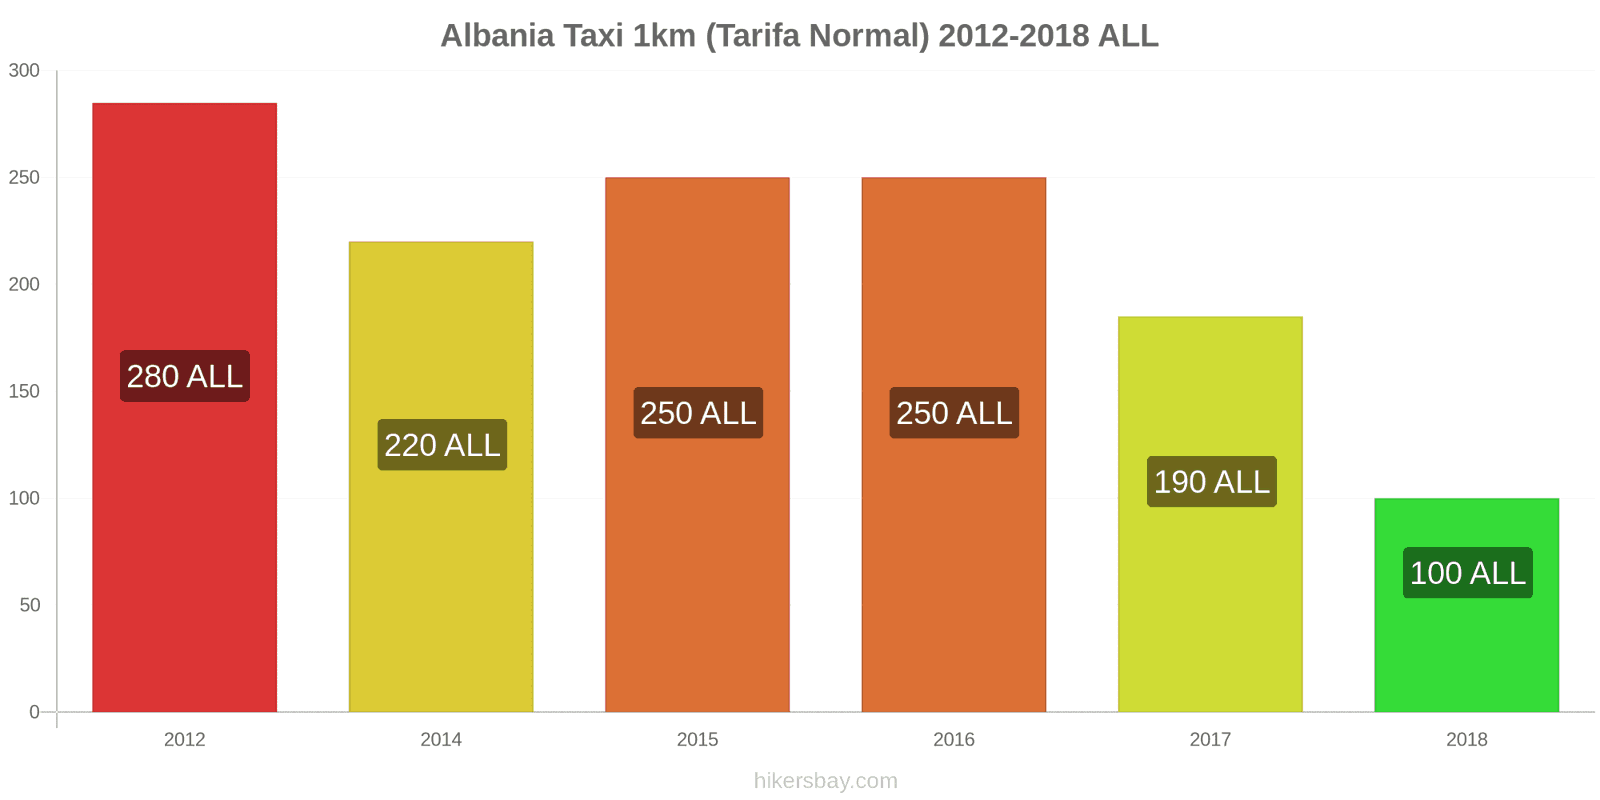 Albania cambios de precios Taxi 1km (tarifa normal) hikersbay.com